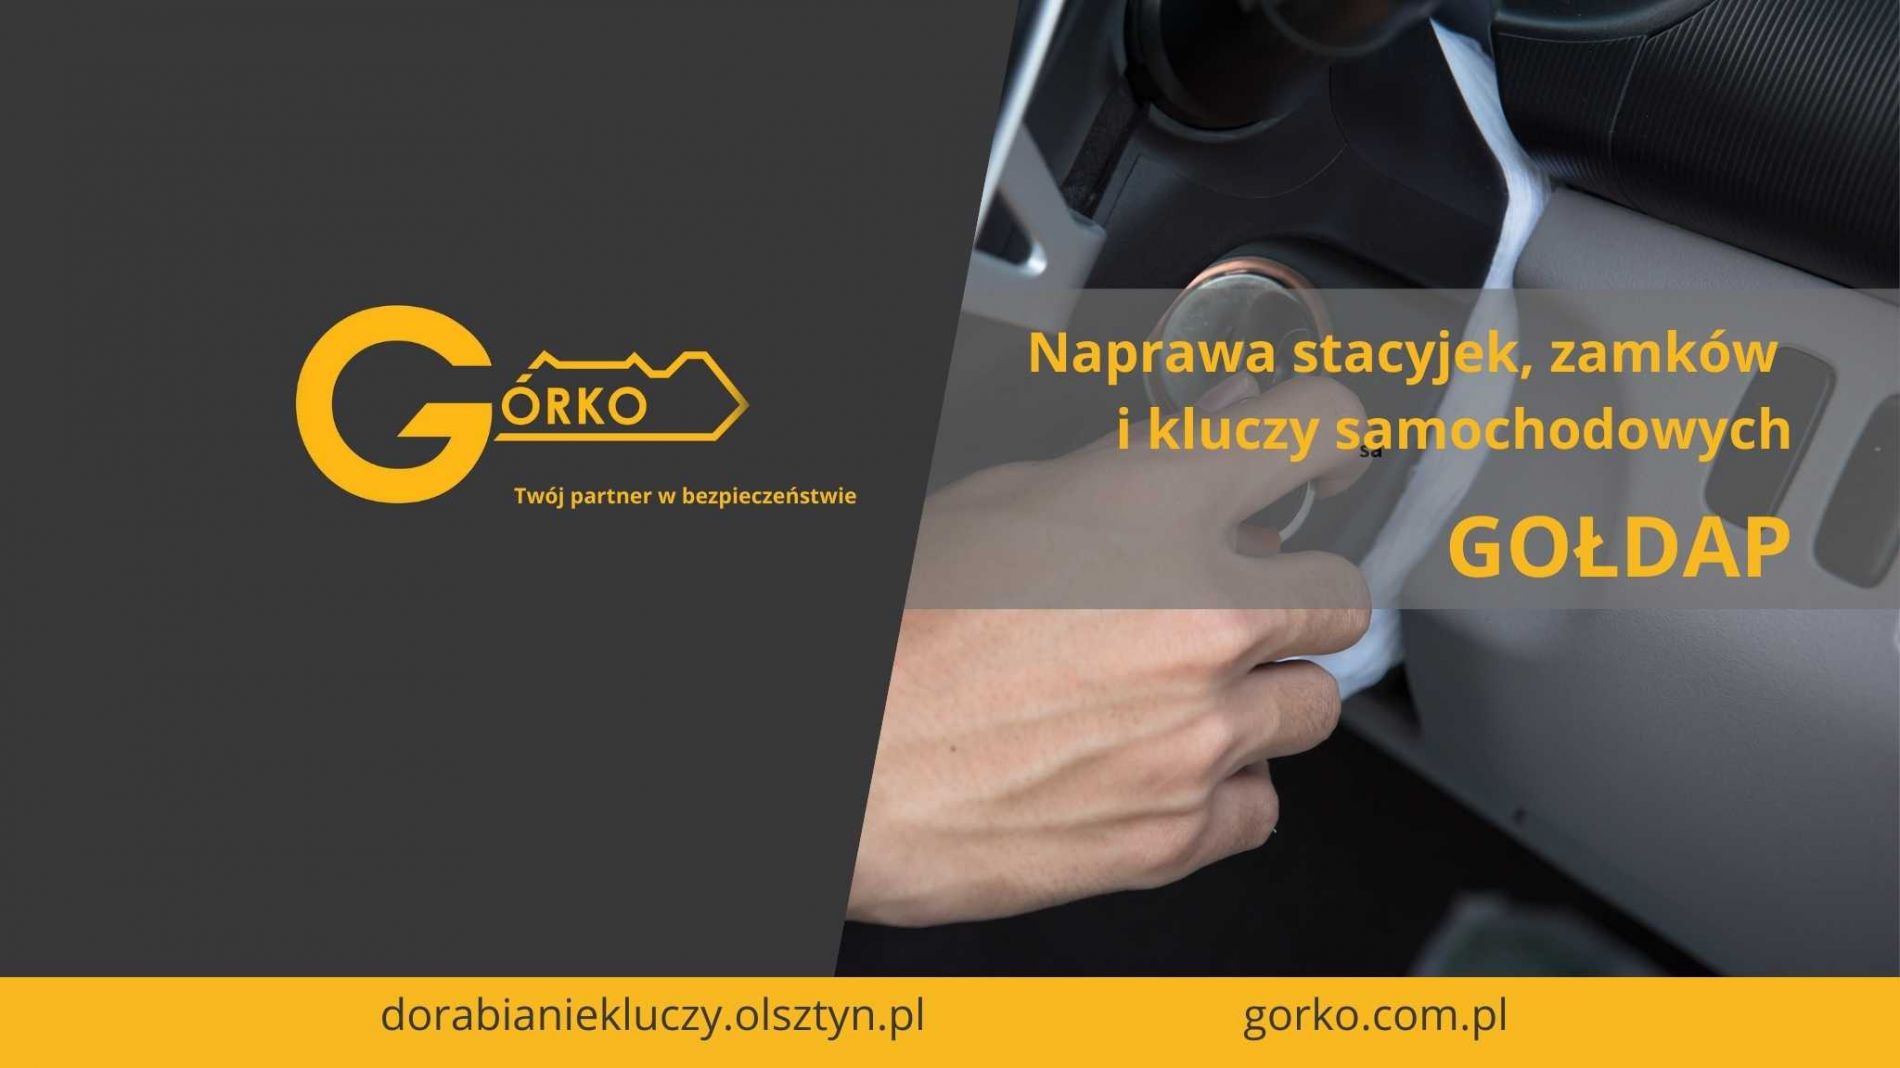 Naprawa stacyjek, zamków i kluczy samochodowych – Gołdap (Usługa zdalna)